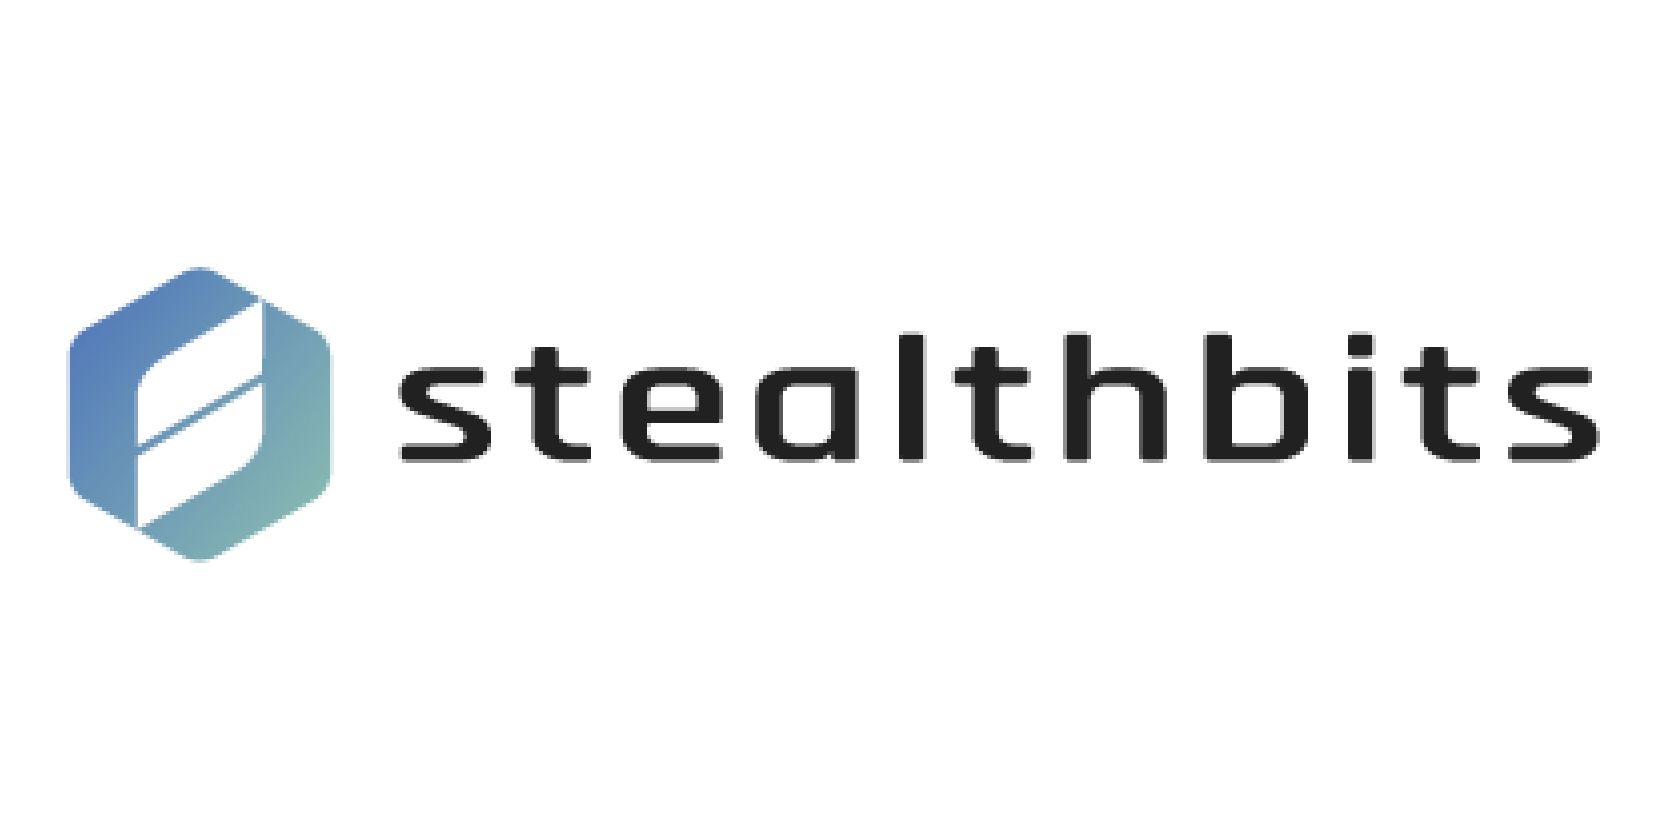 Stealthbits Logo